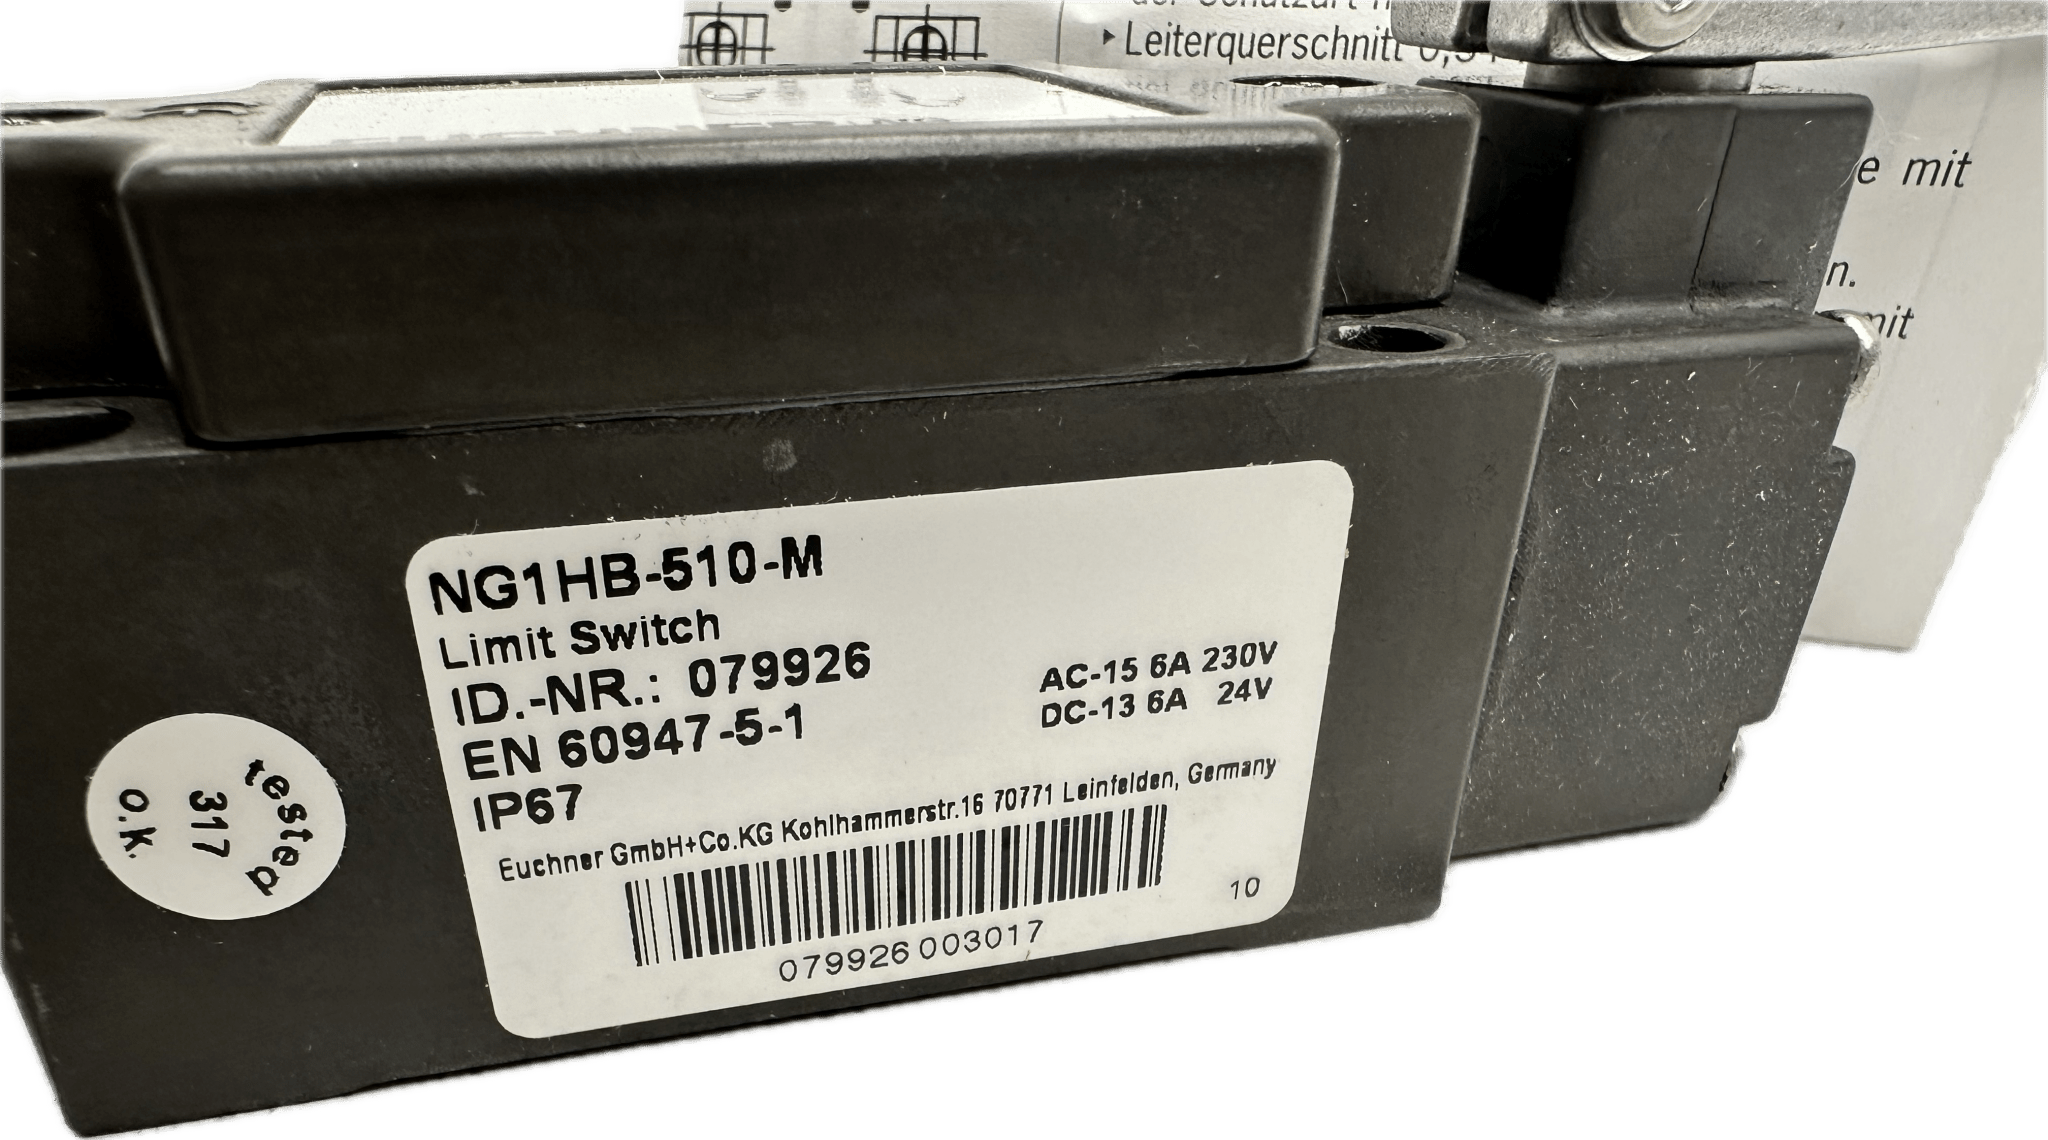 Euchner Positionsschalter NG.HB, Kunststoffrolle NG1HB-510-M - #product_category# | Klenk Maschinenhandel